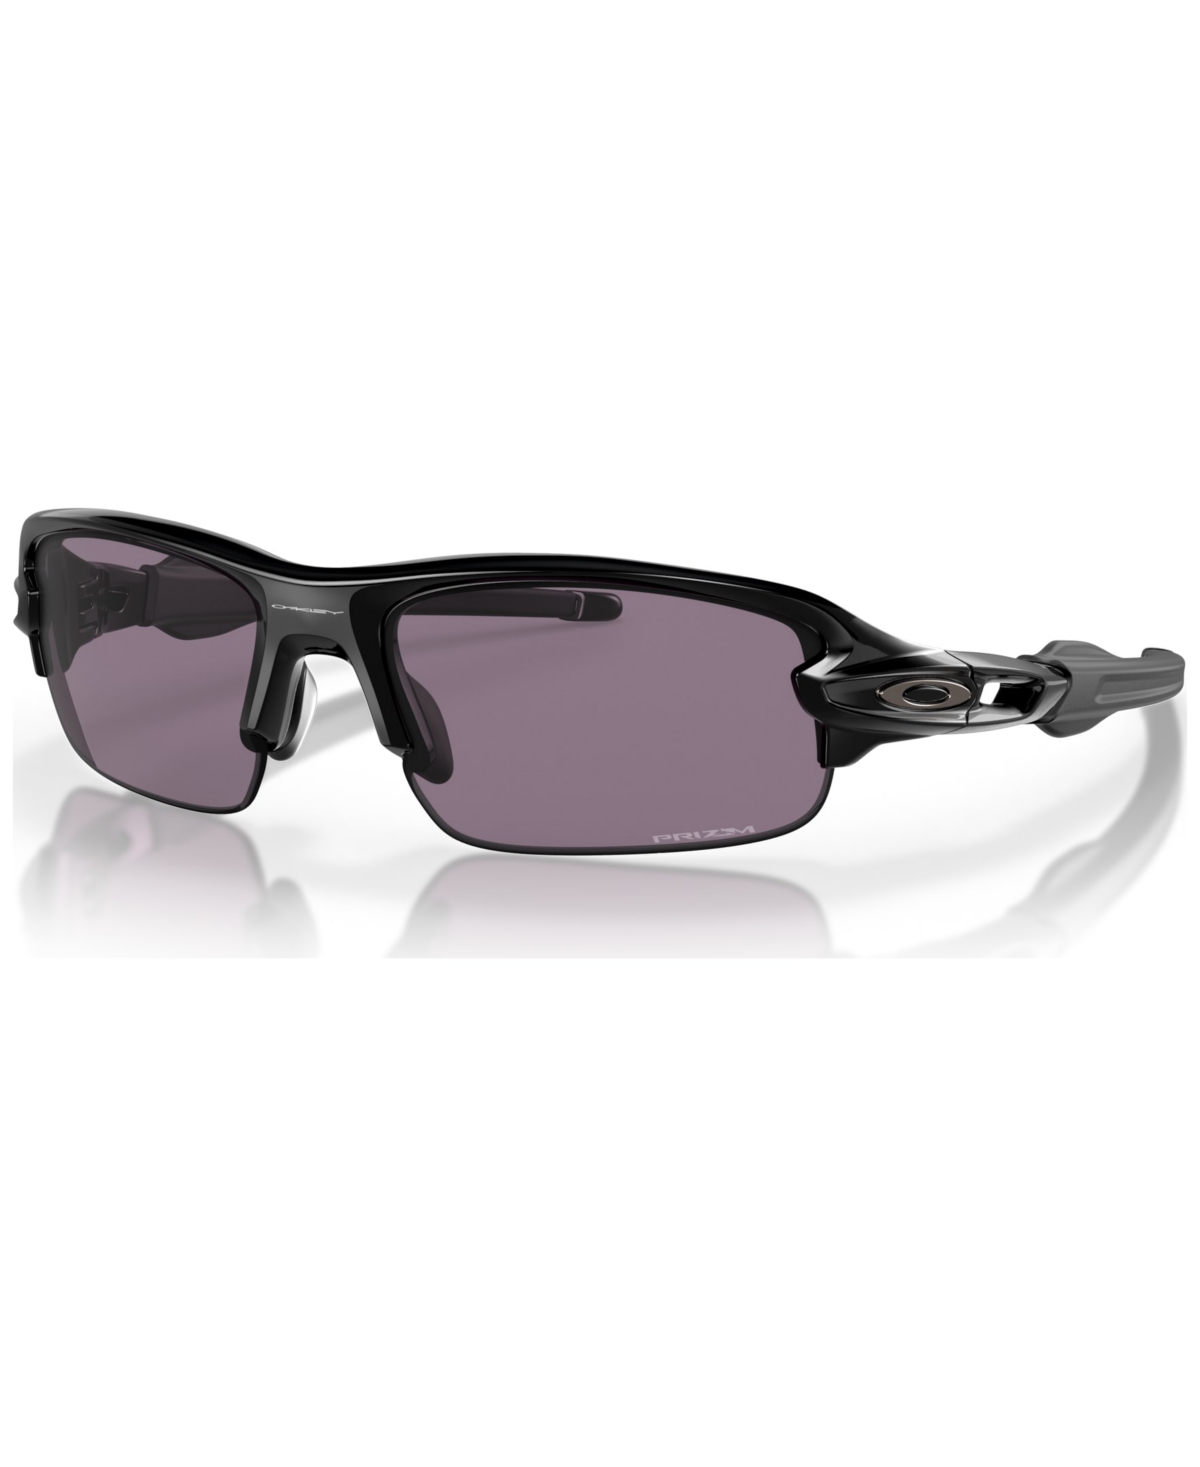 Oakley Jr Kids Flak Xxs Youth Fit 58 Sunglasses, Oj9008 (ages 7-10) In Polished Black